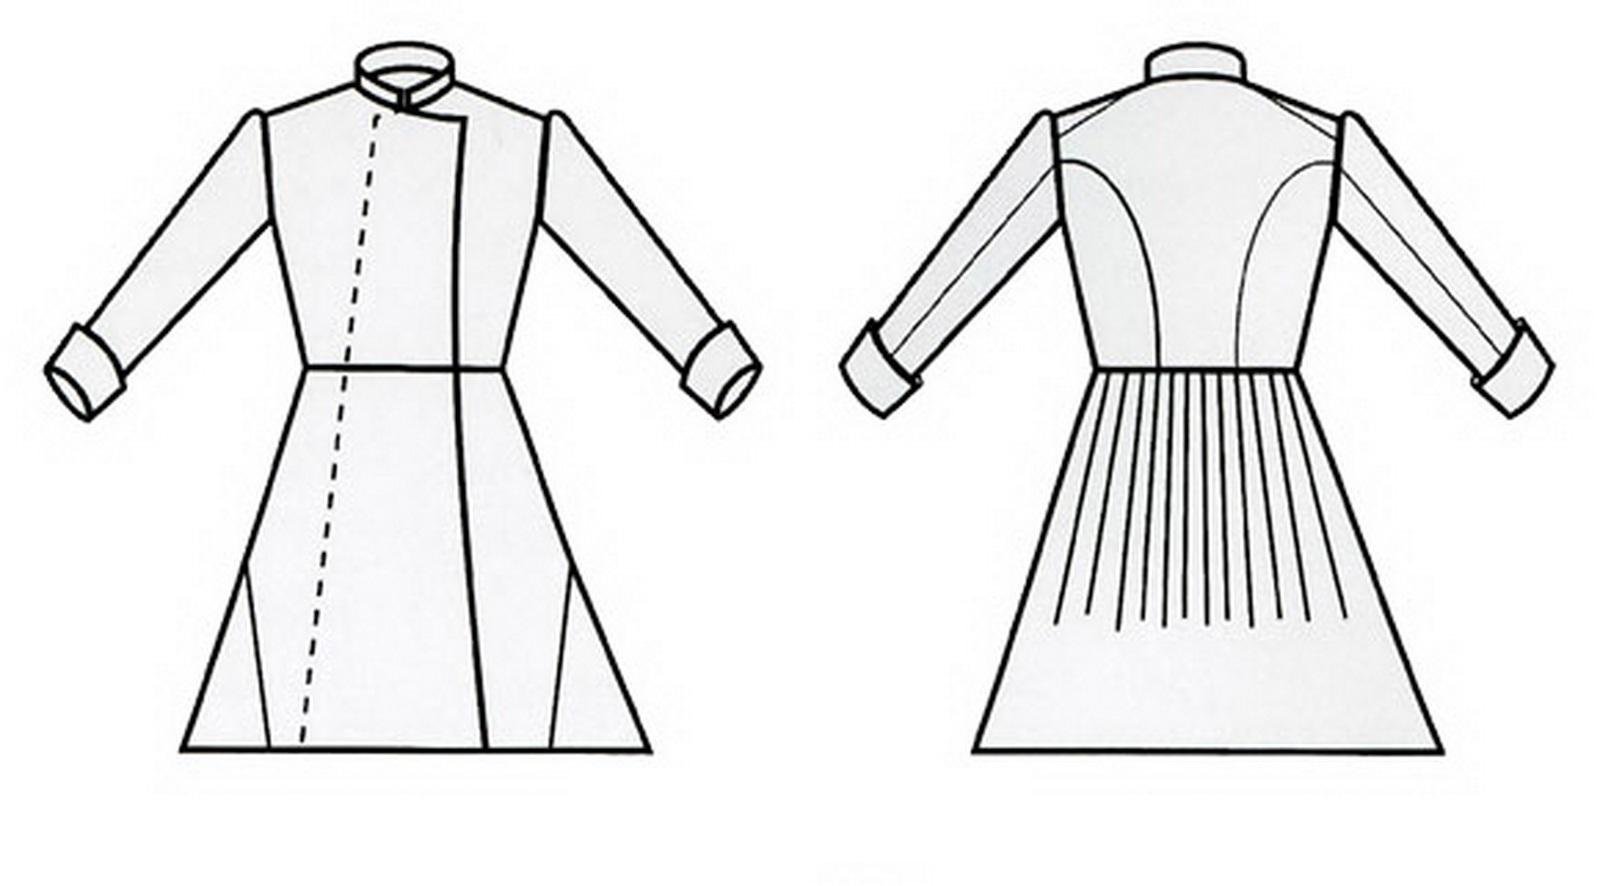 Kazakh camisole for children #2